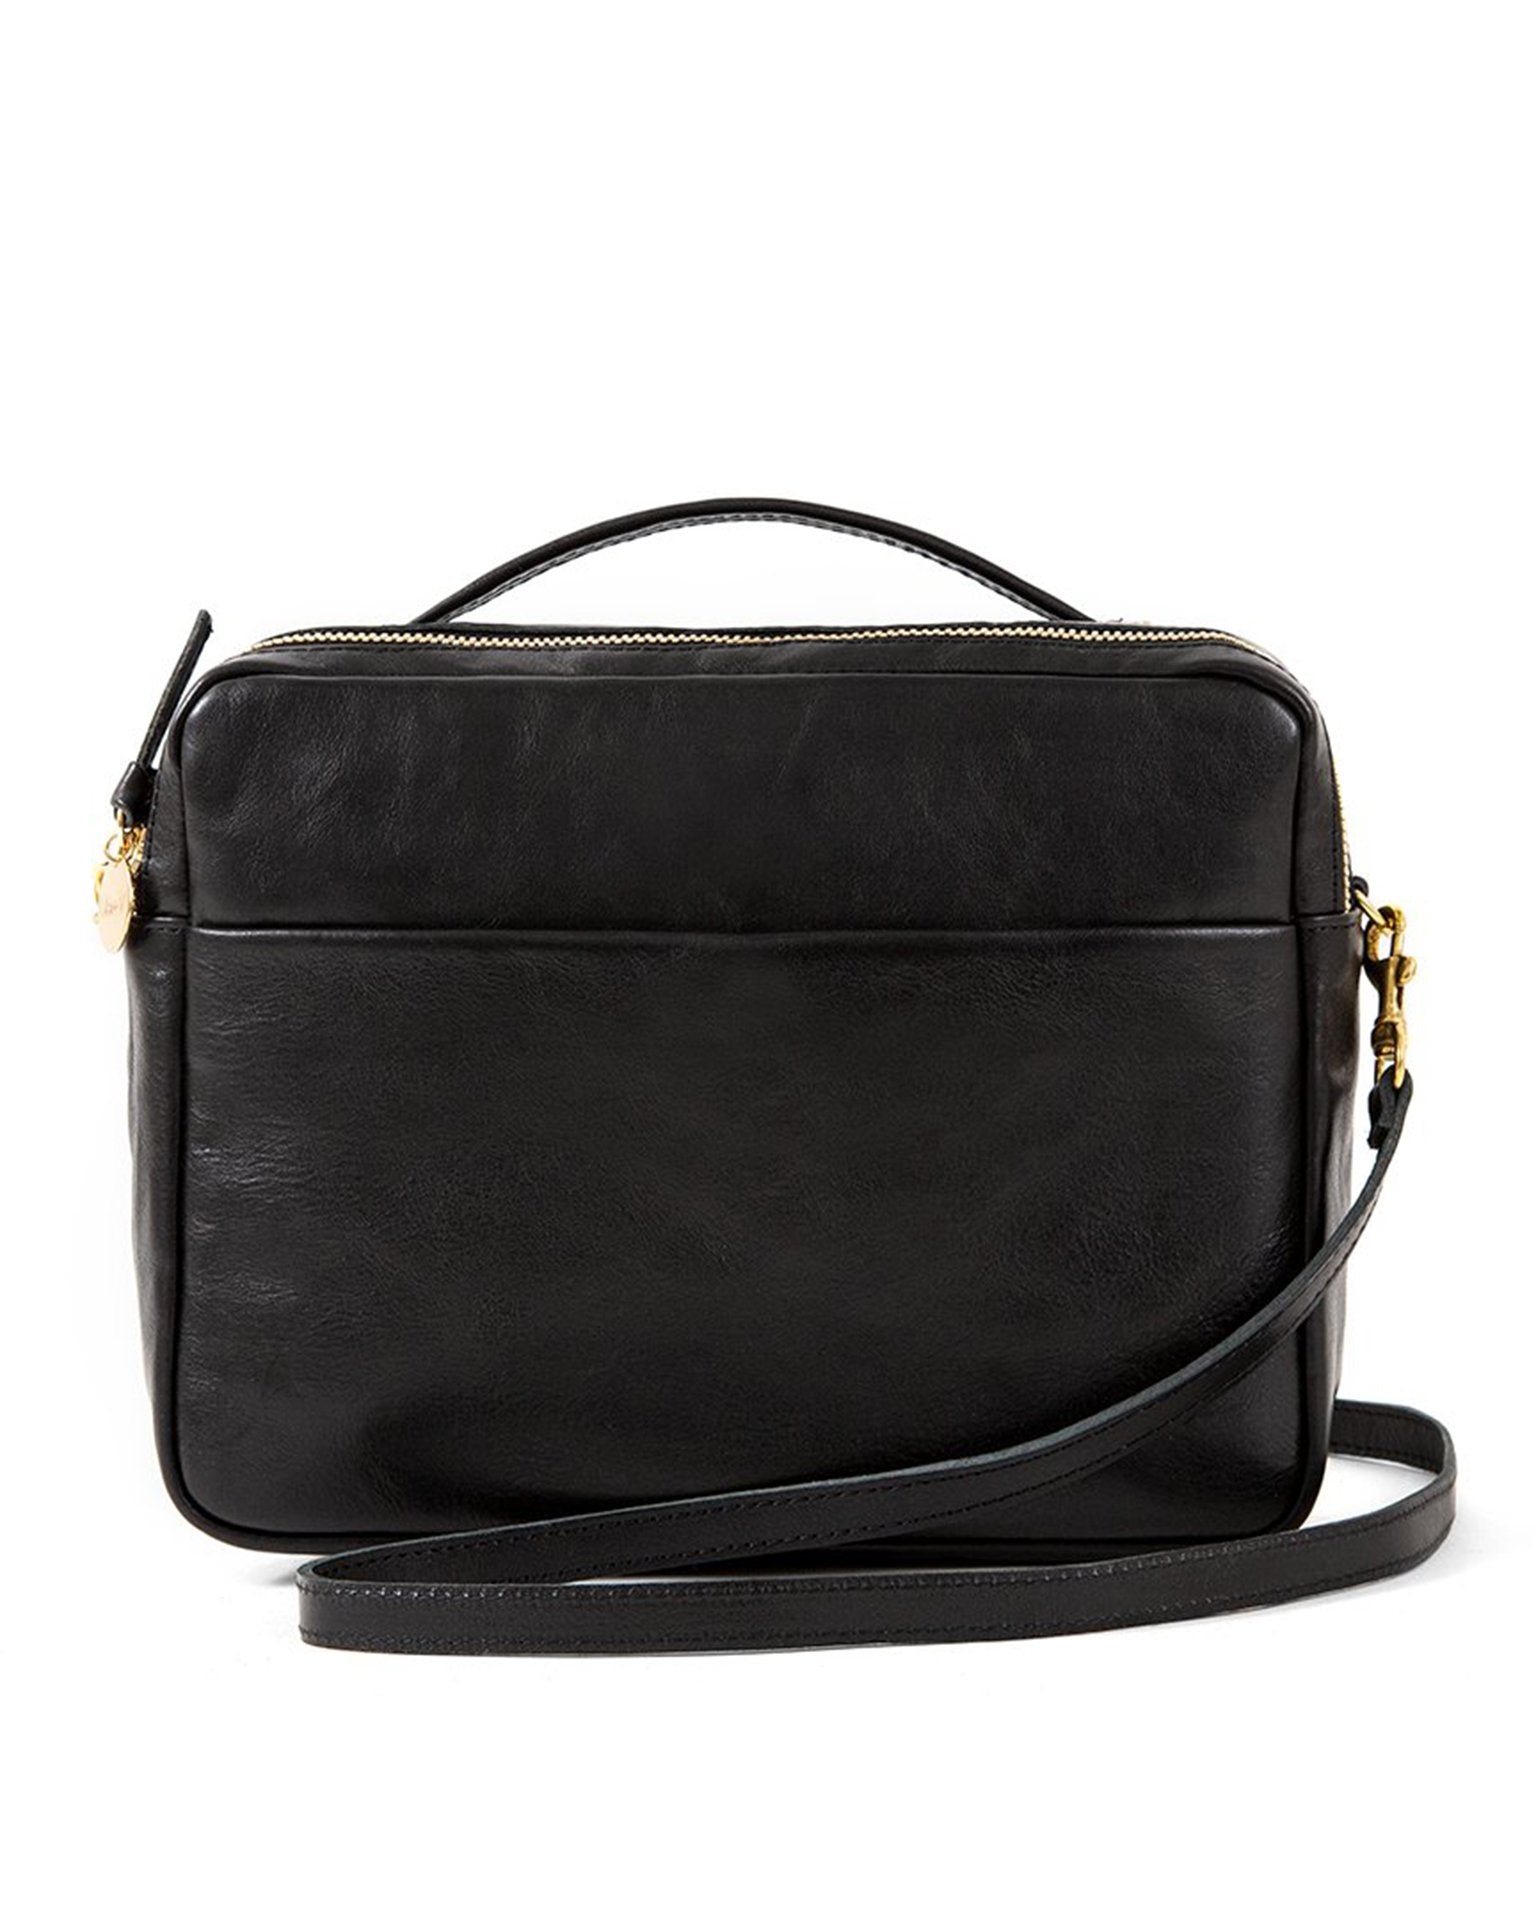 Black Moyen Messenger Bag by Clare V. for $115